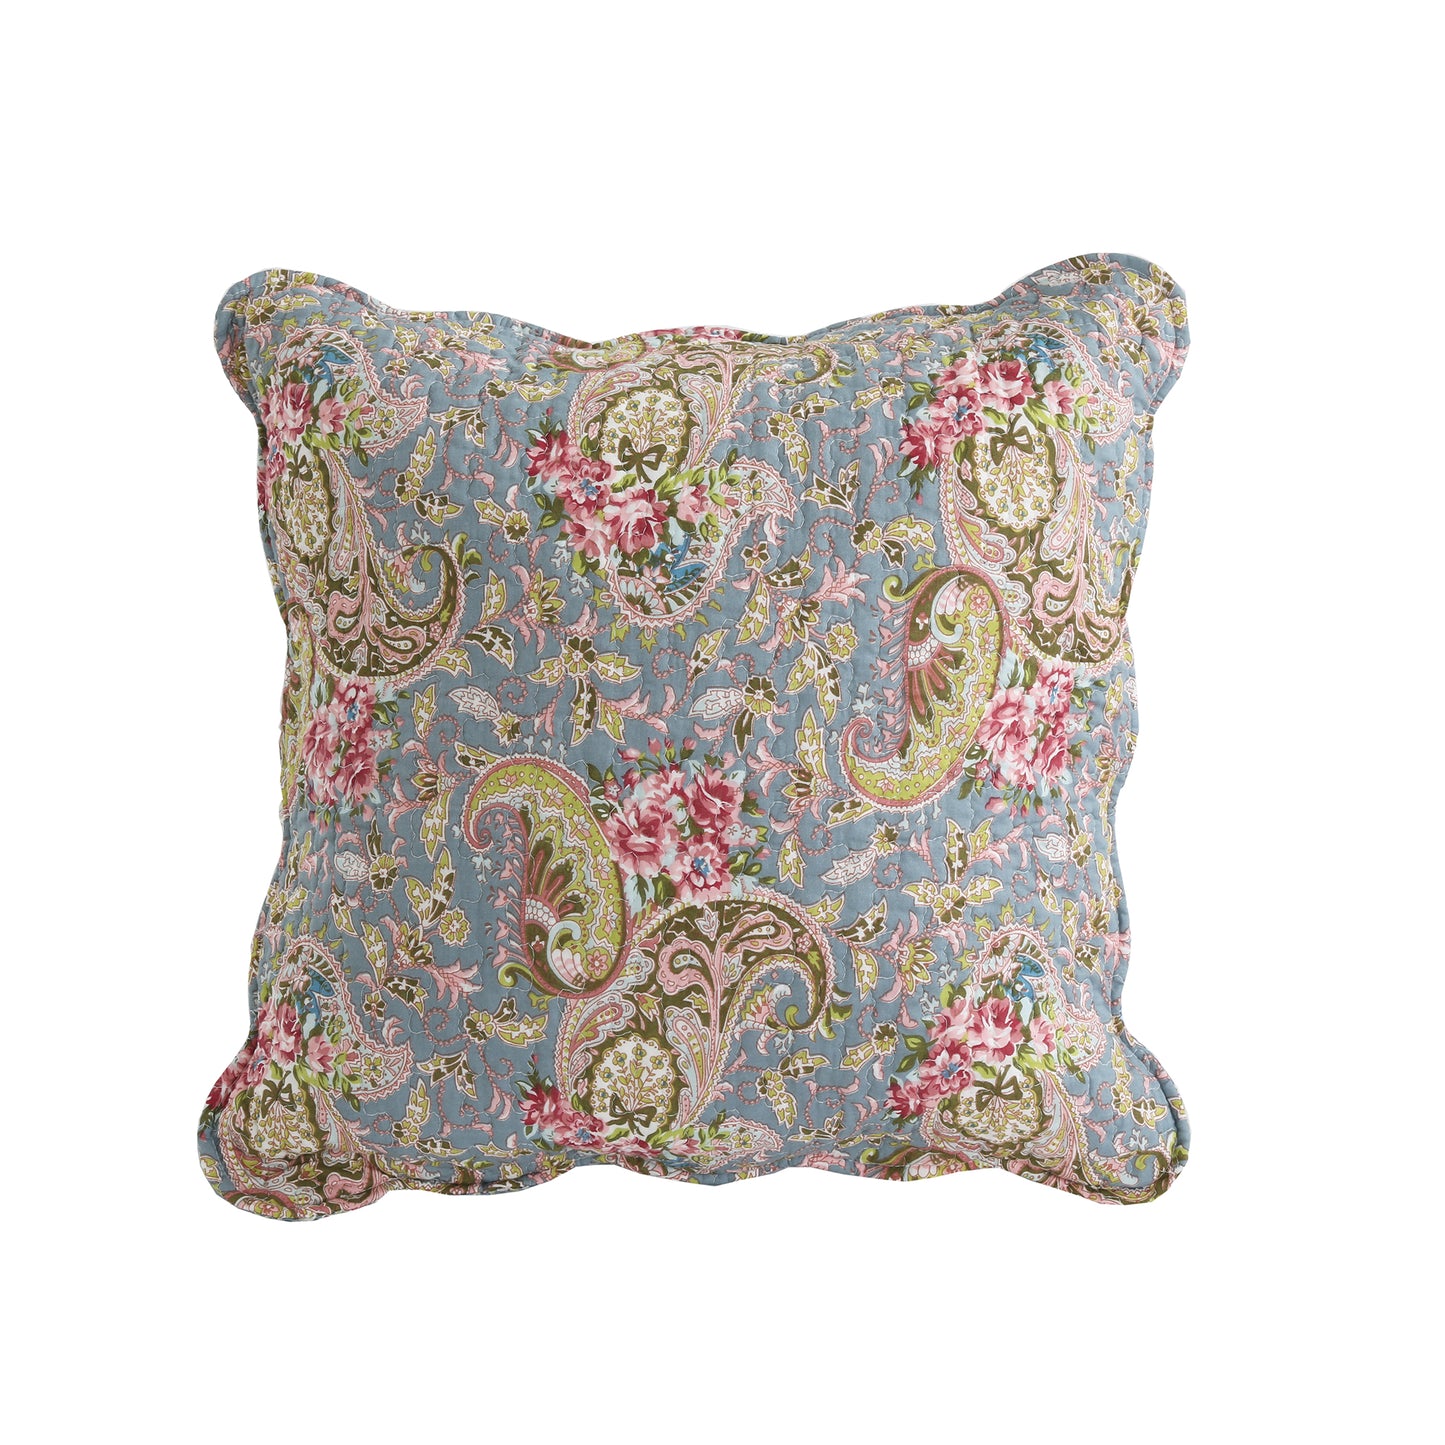 Floral Paisley Blue Cotton 3-Piece Reversible Quilt Bedding Set